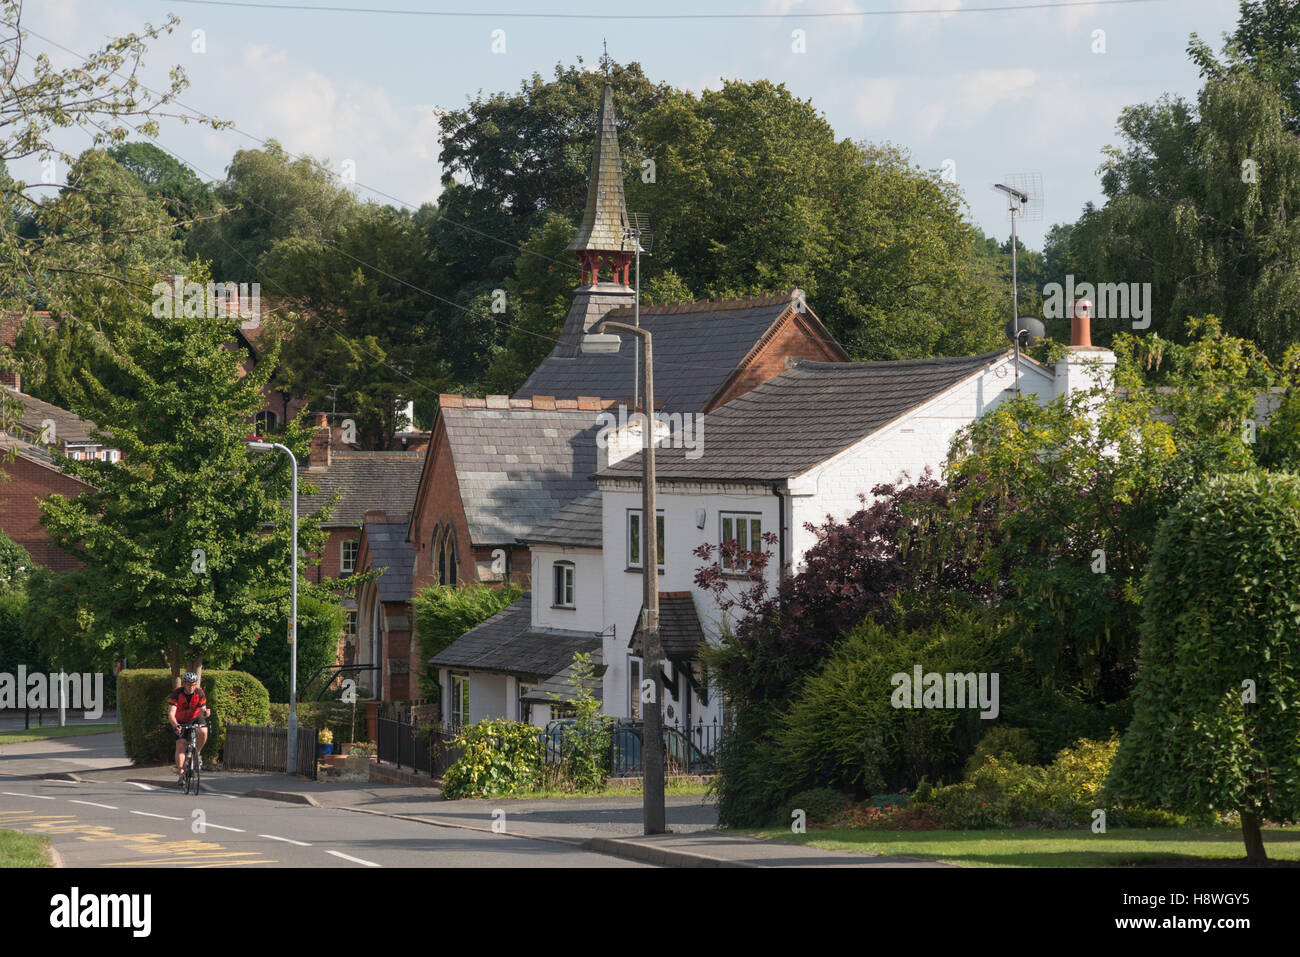 Un cycliste lointain du vélo dans le village de Snitterfield, Warwickshire, England, UK Banque D'Images